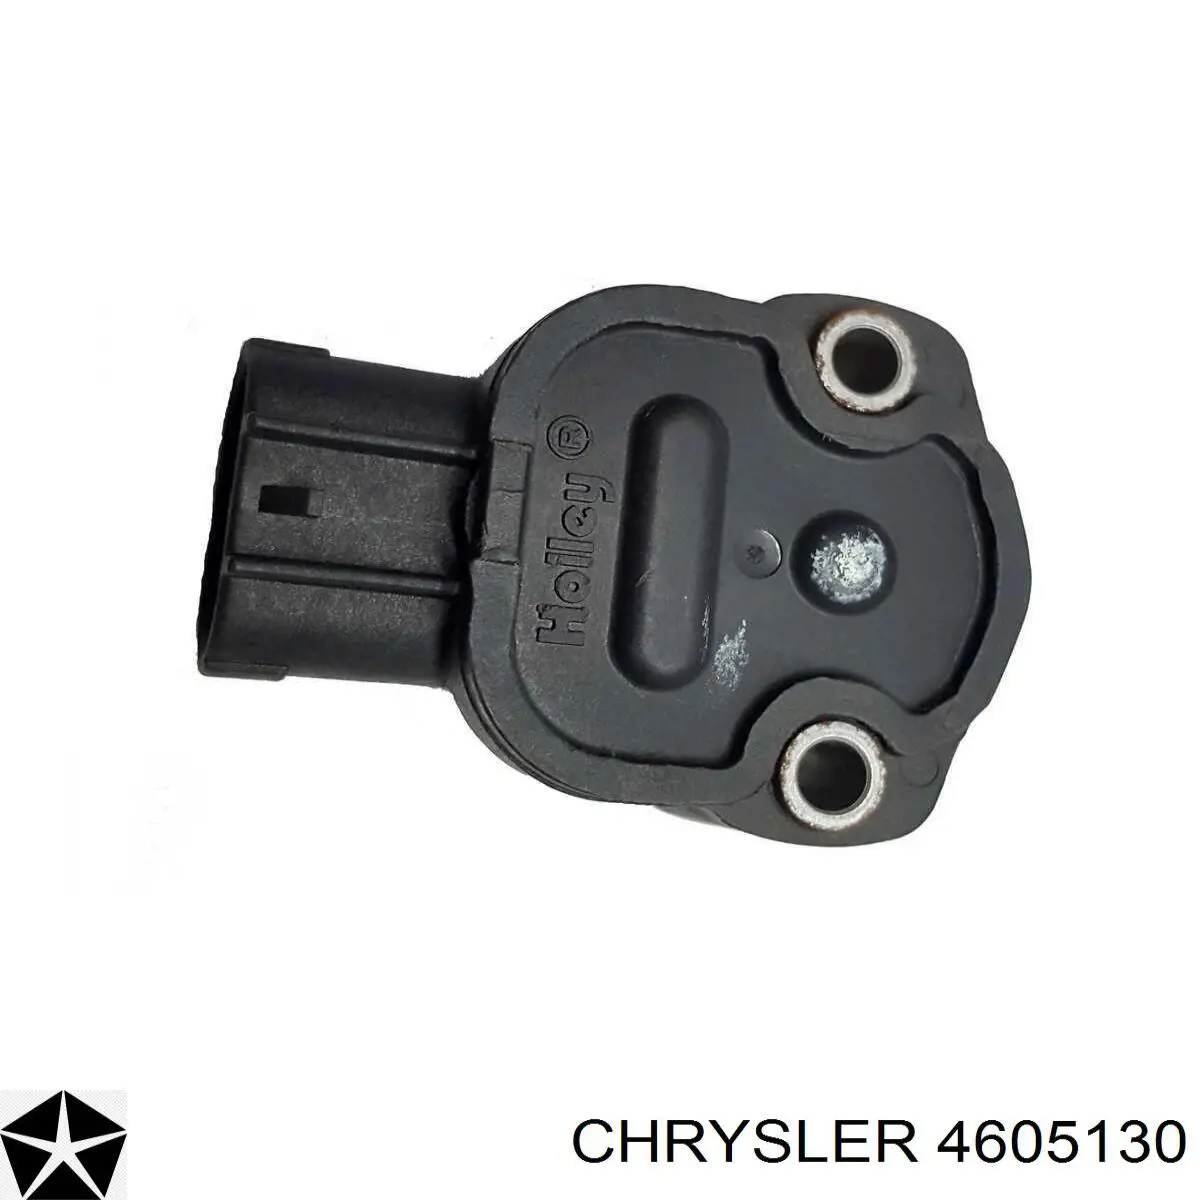 4605130 Chrysler датчик положения дроссельной заслонки (потенциометр)